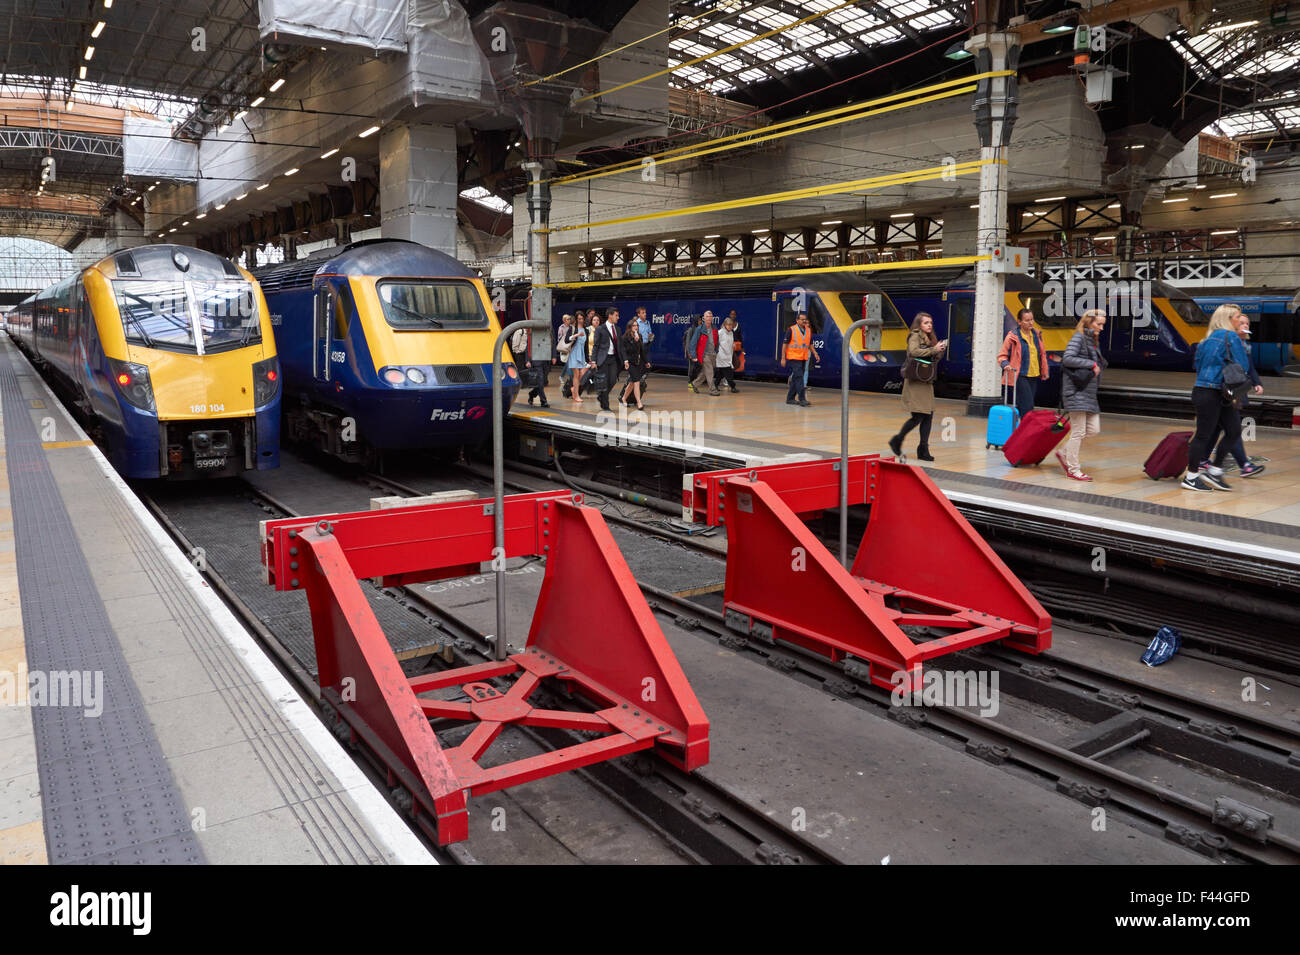 Passagers à la gare de Paddington, Londres Angleterre Royaume-Uni UK Banque D'Images